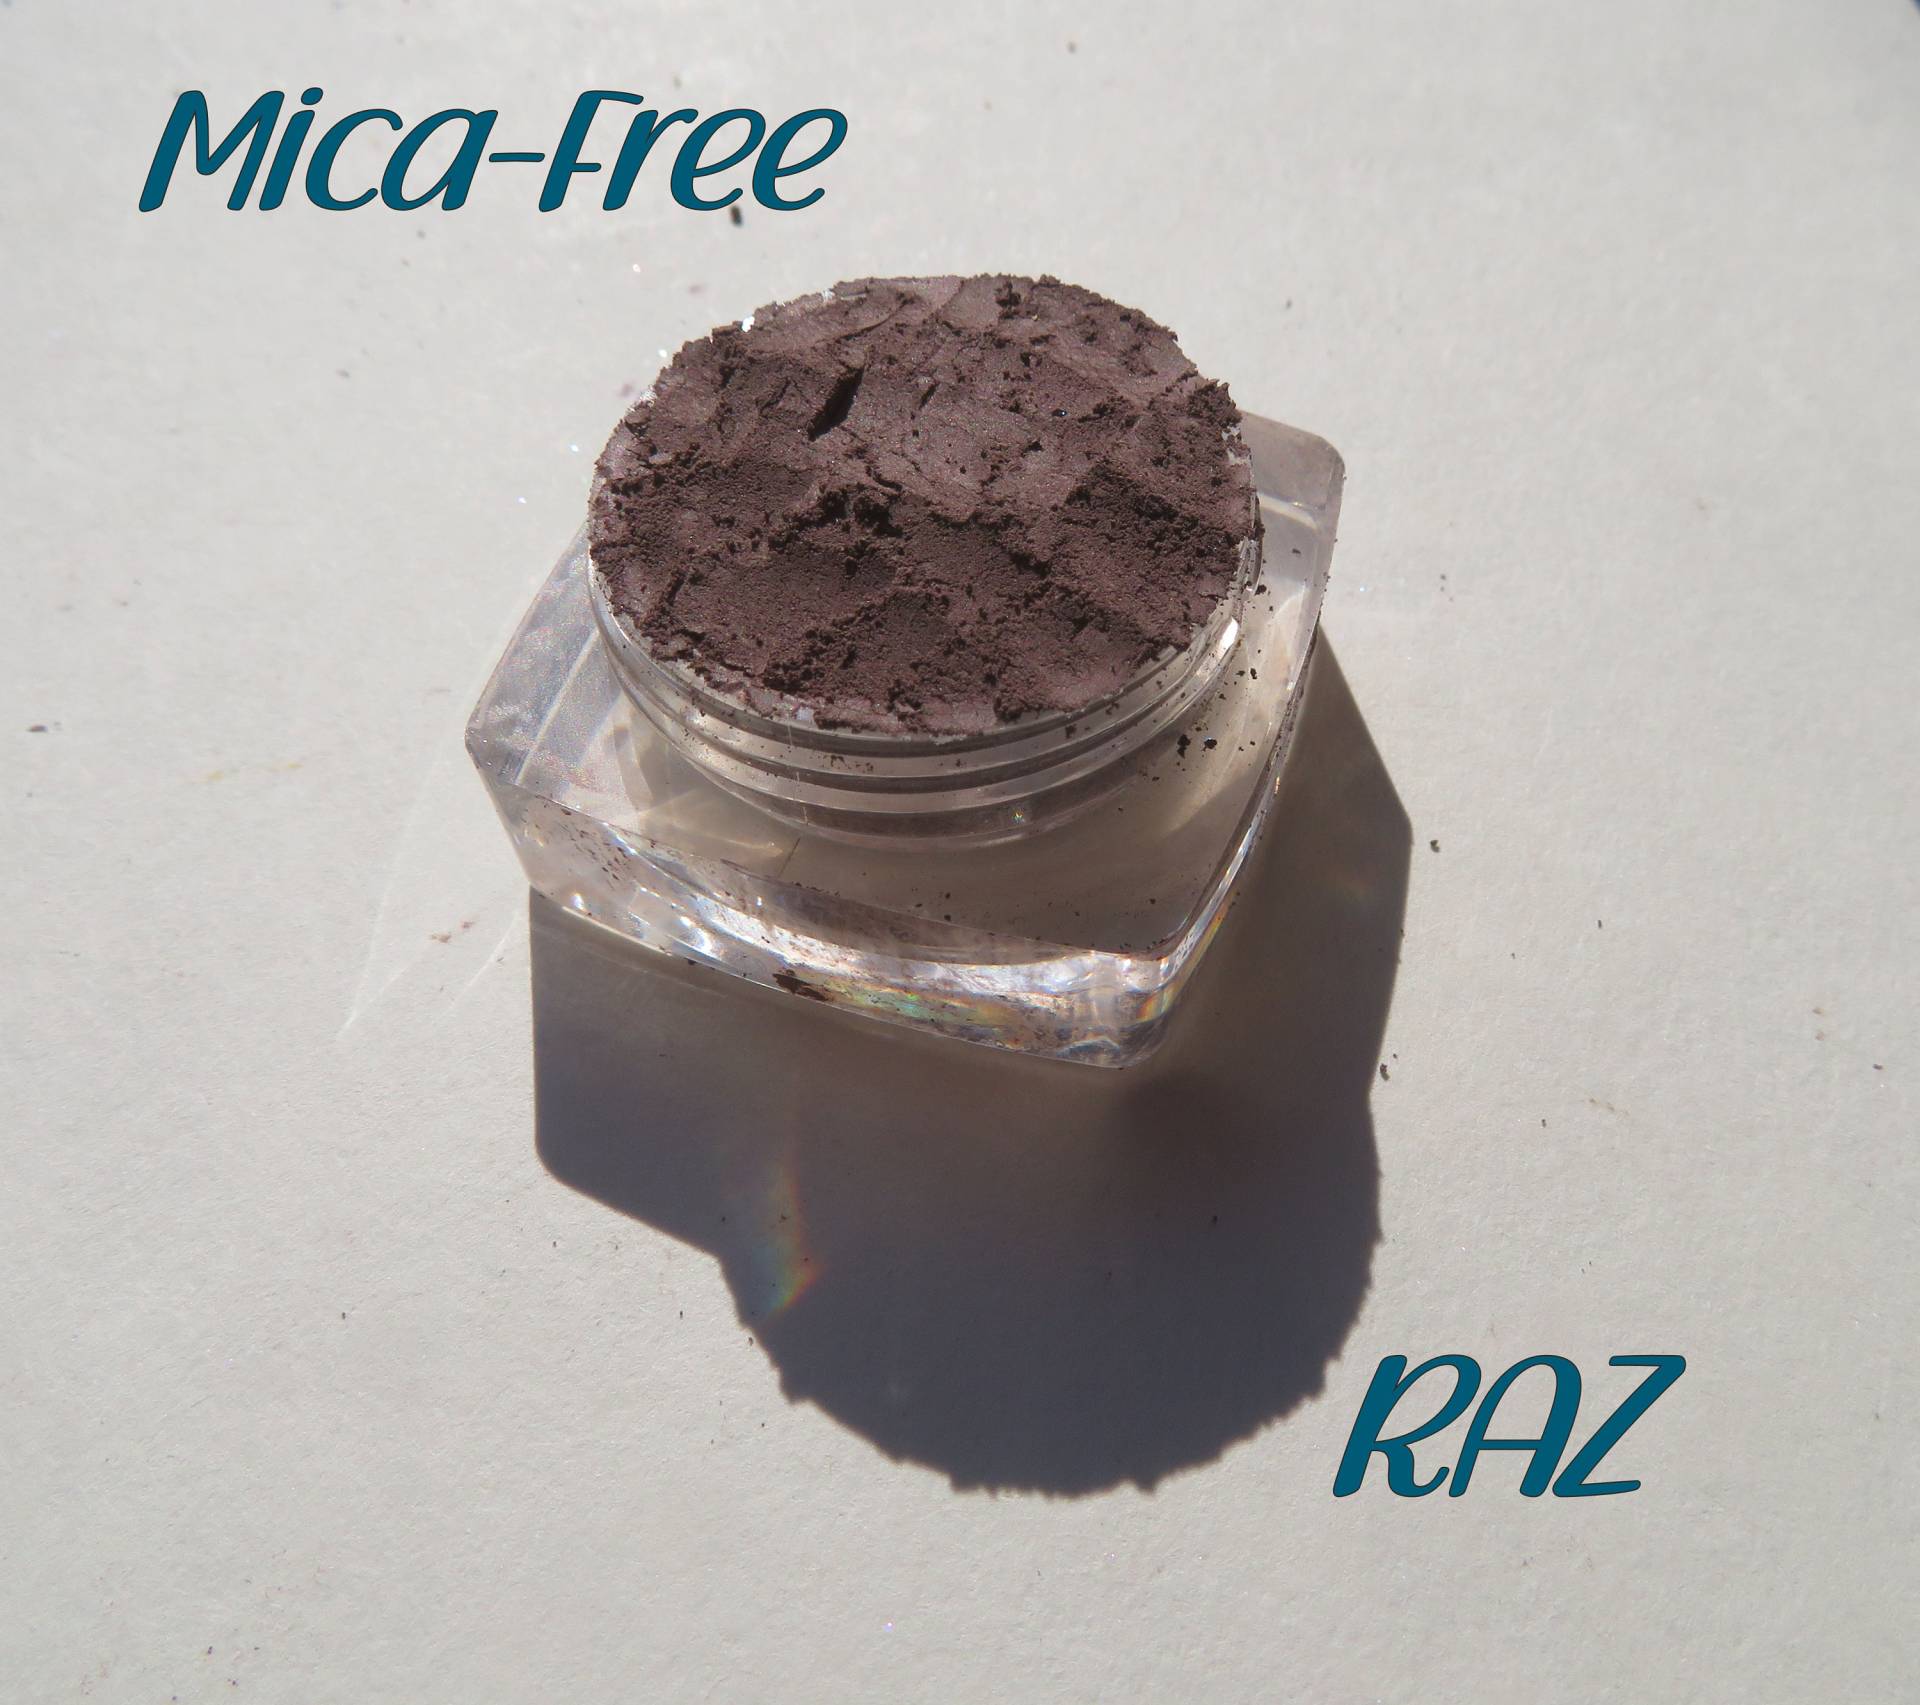 Raz - Mica-Free Matte Dark Brown Mineral Lidschatten, Lose Pigmente, Vegan Cruelty-Free, Make Up Lidschatten von kmms